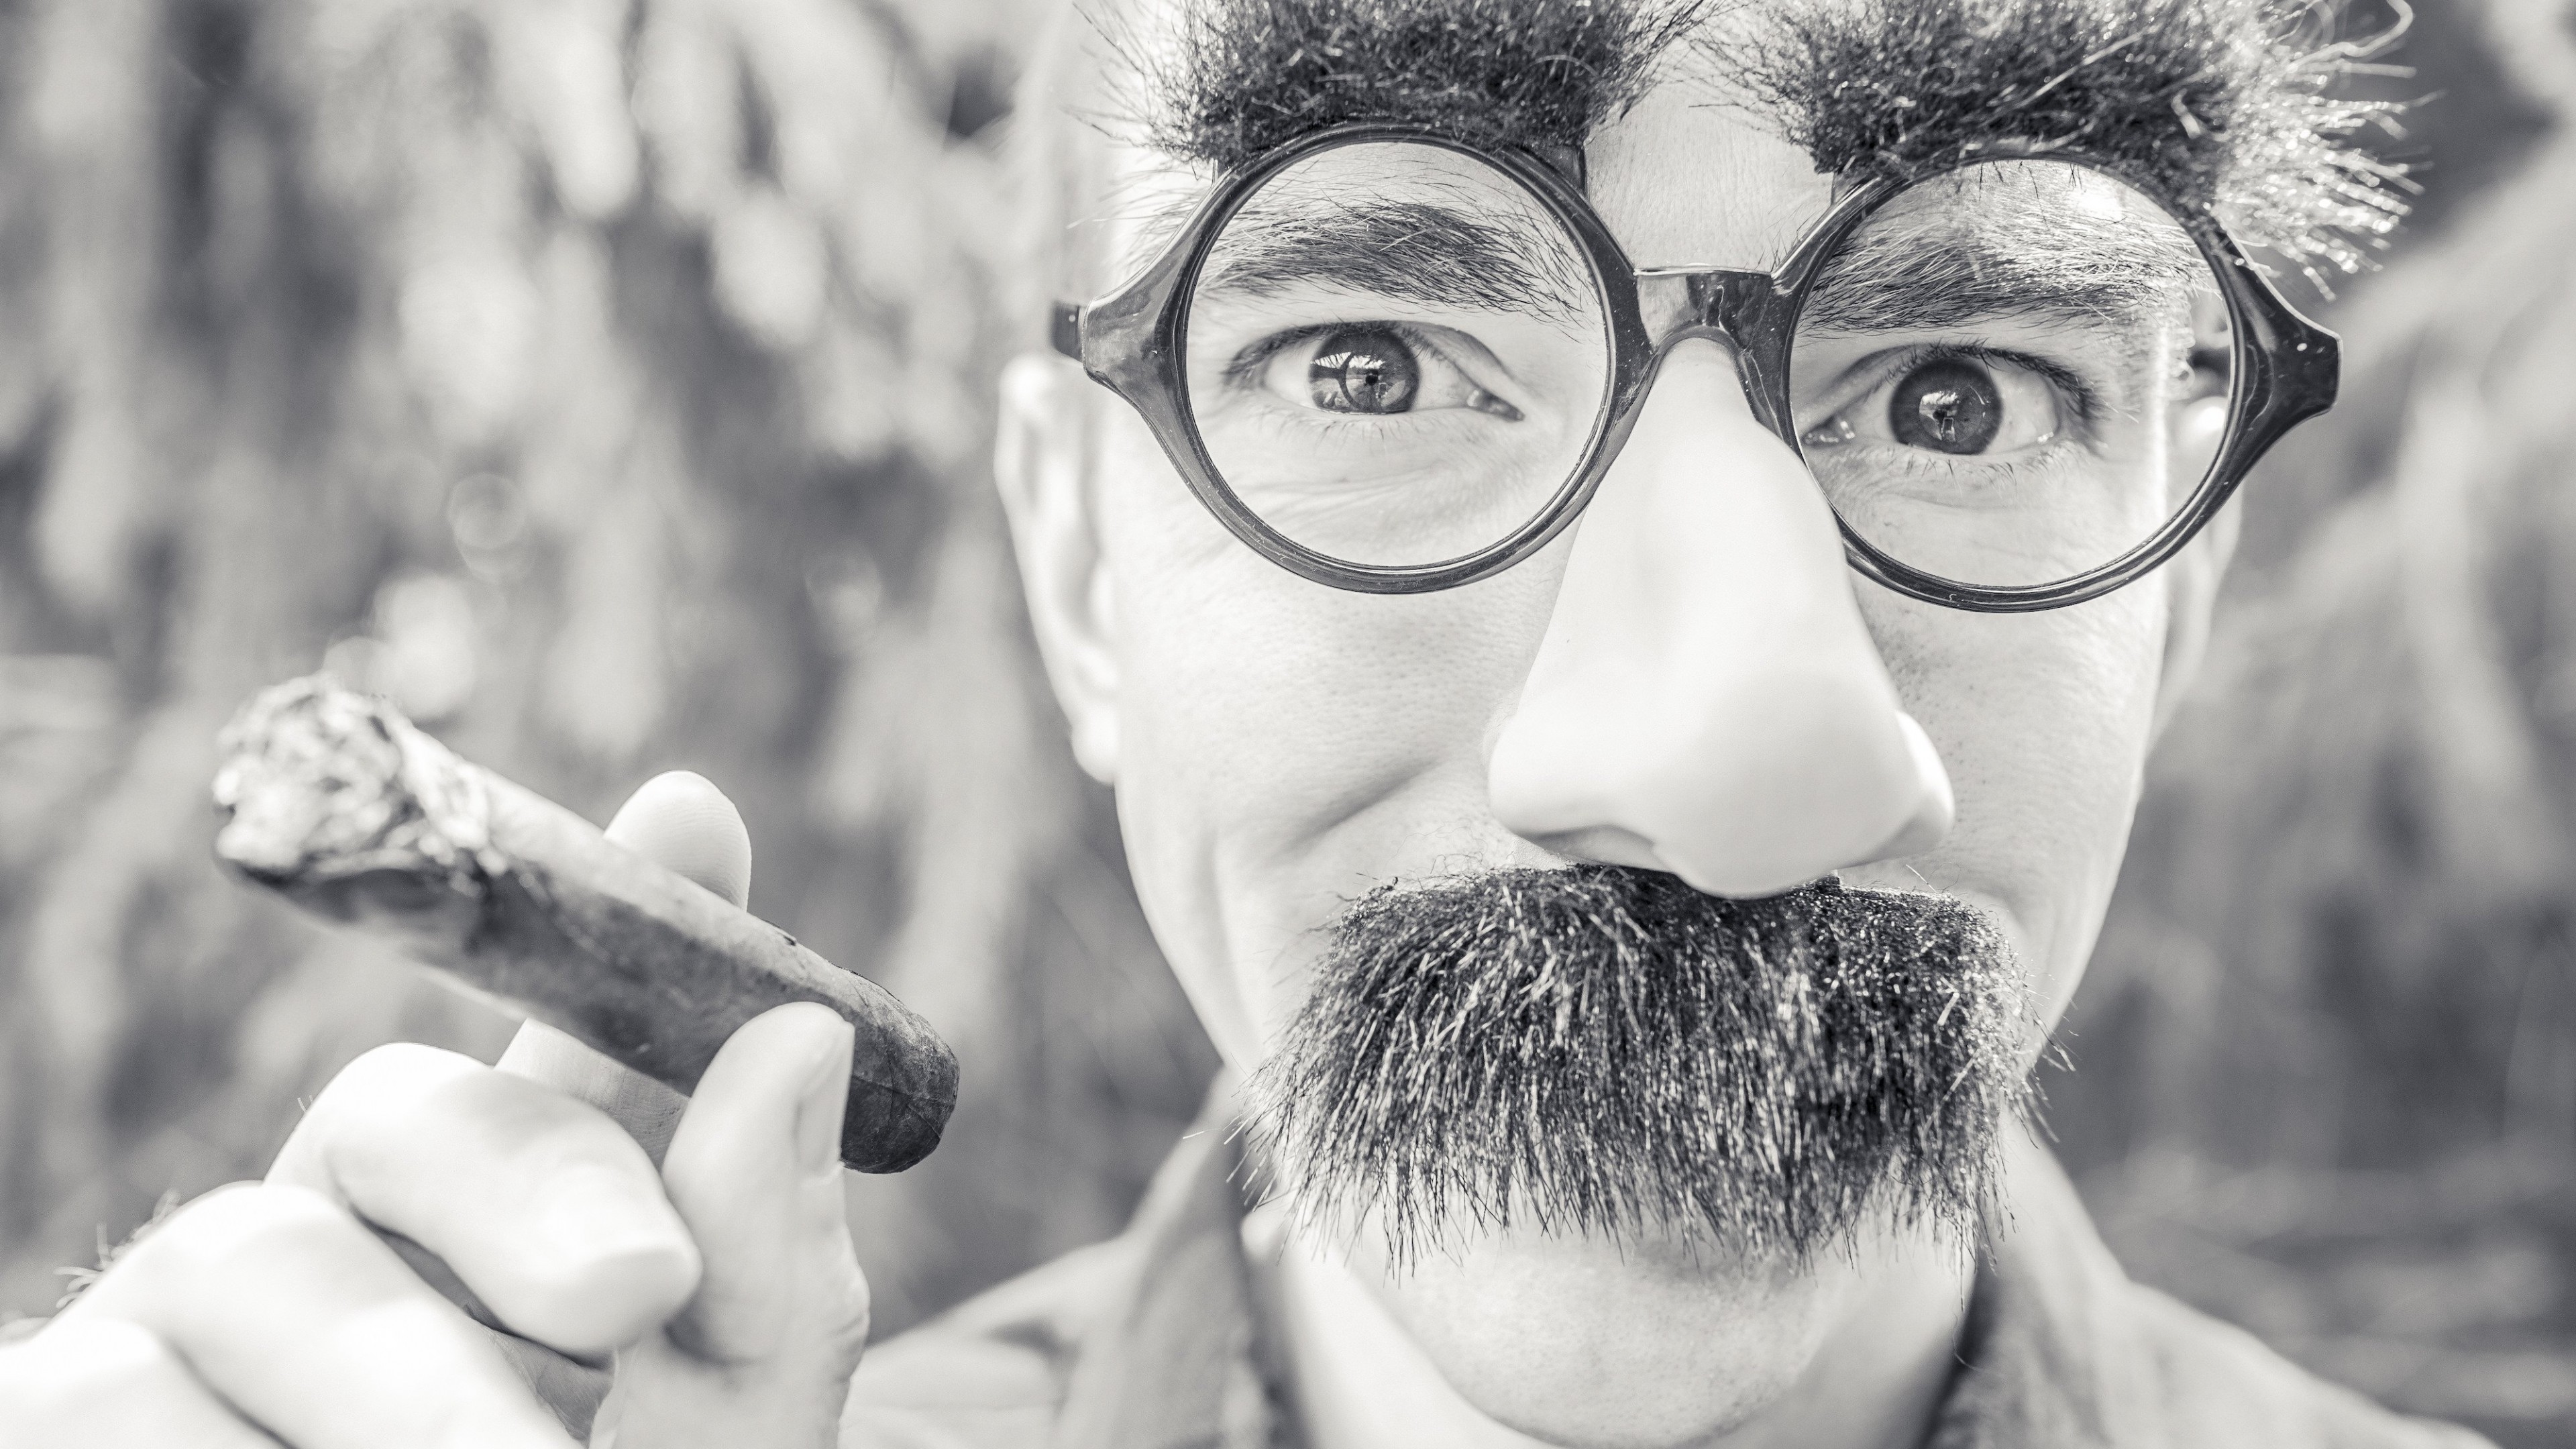 Groucho Glasses Man Wallpaper for Desktop 4K 3840x2160